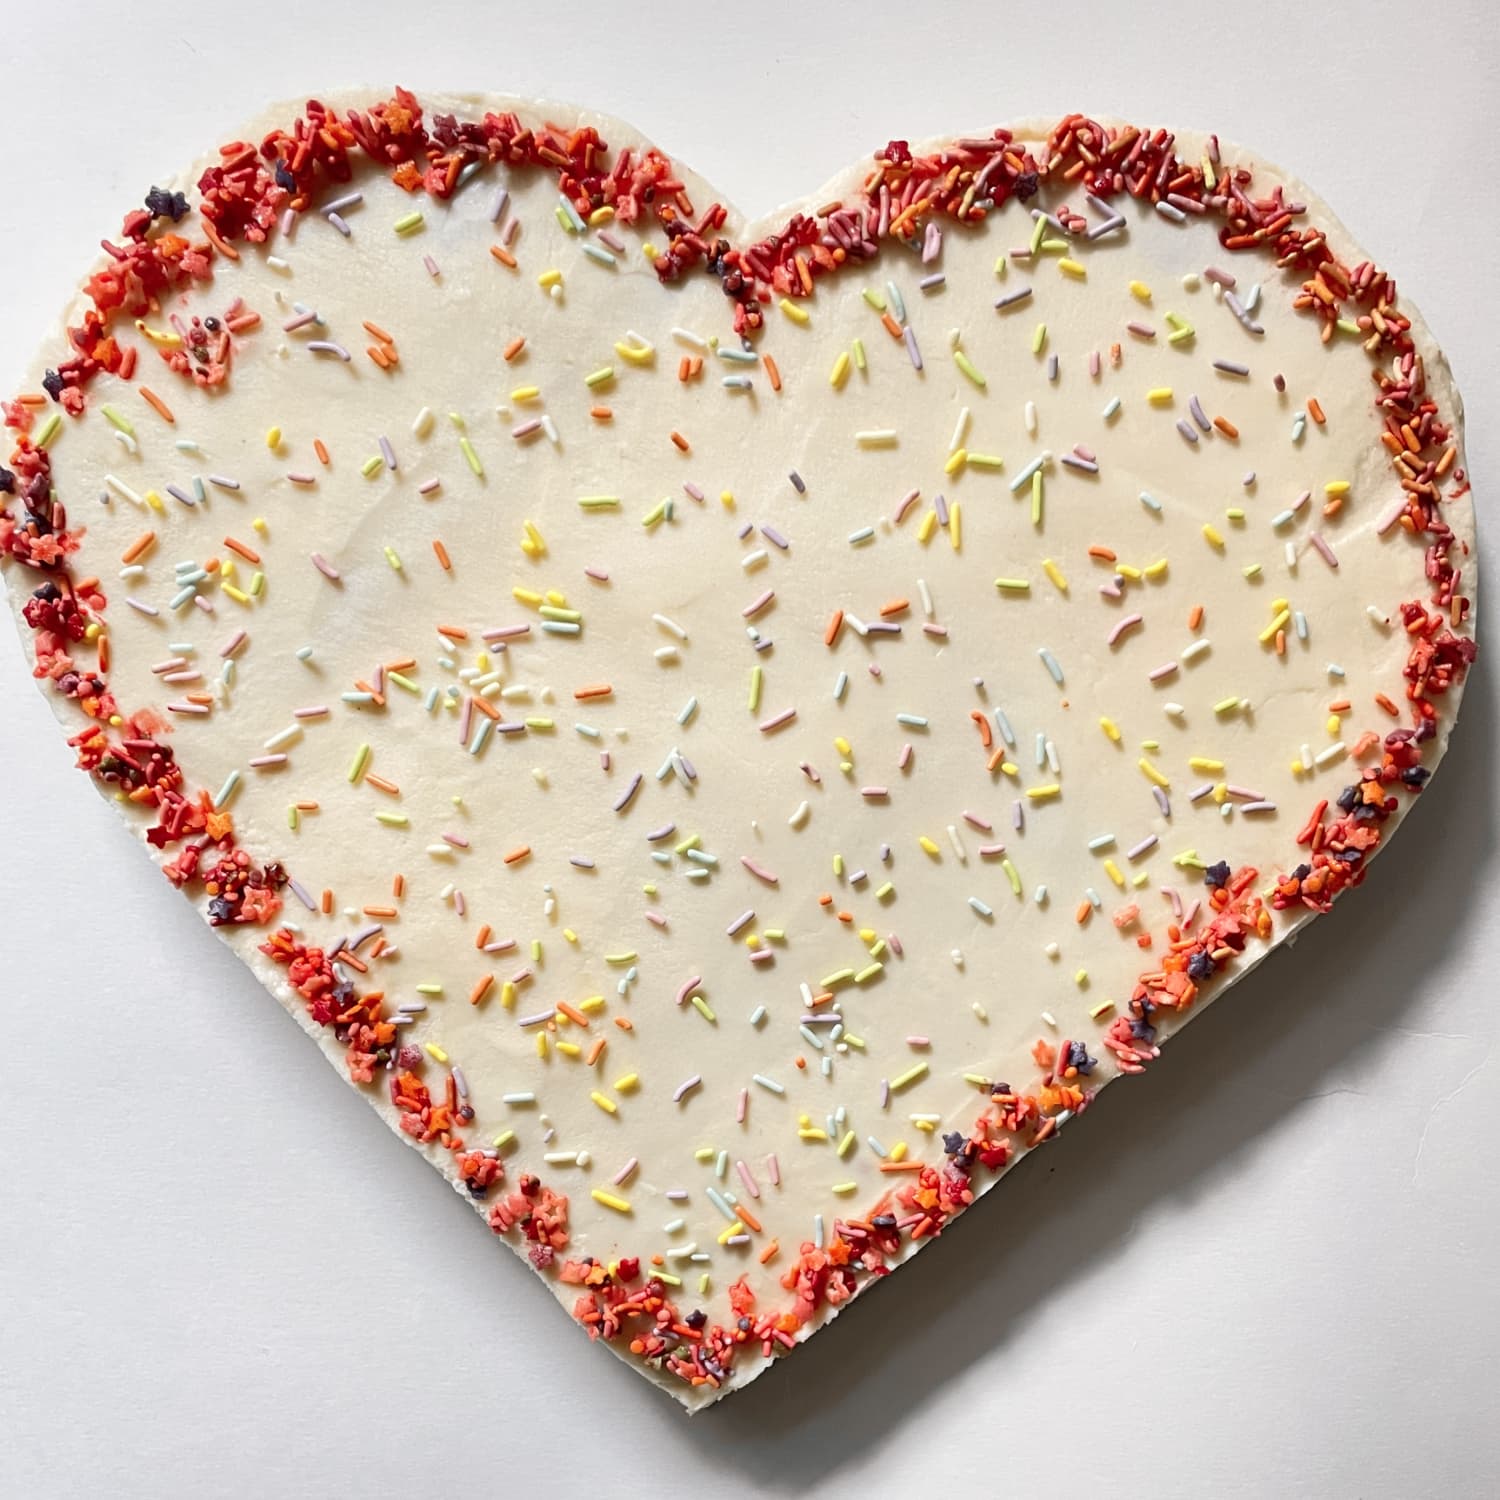 Heart Shaped Cake 